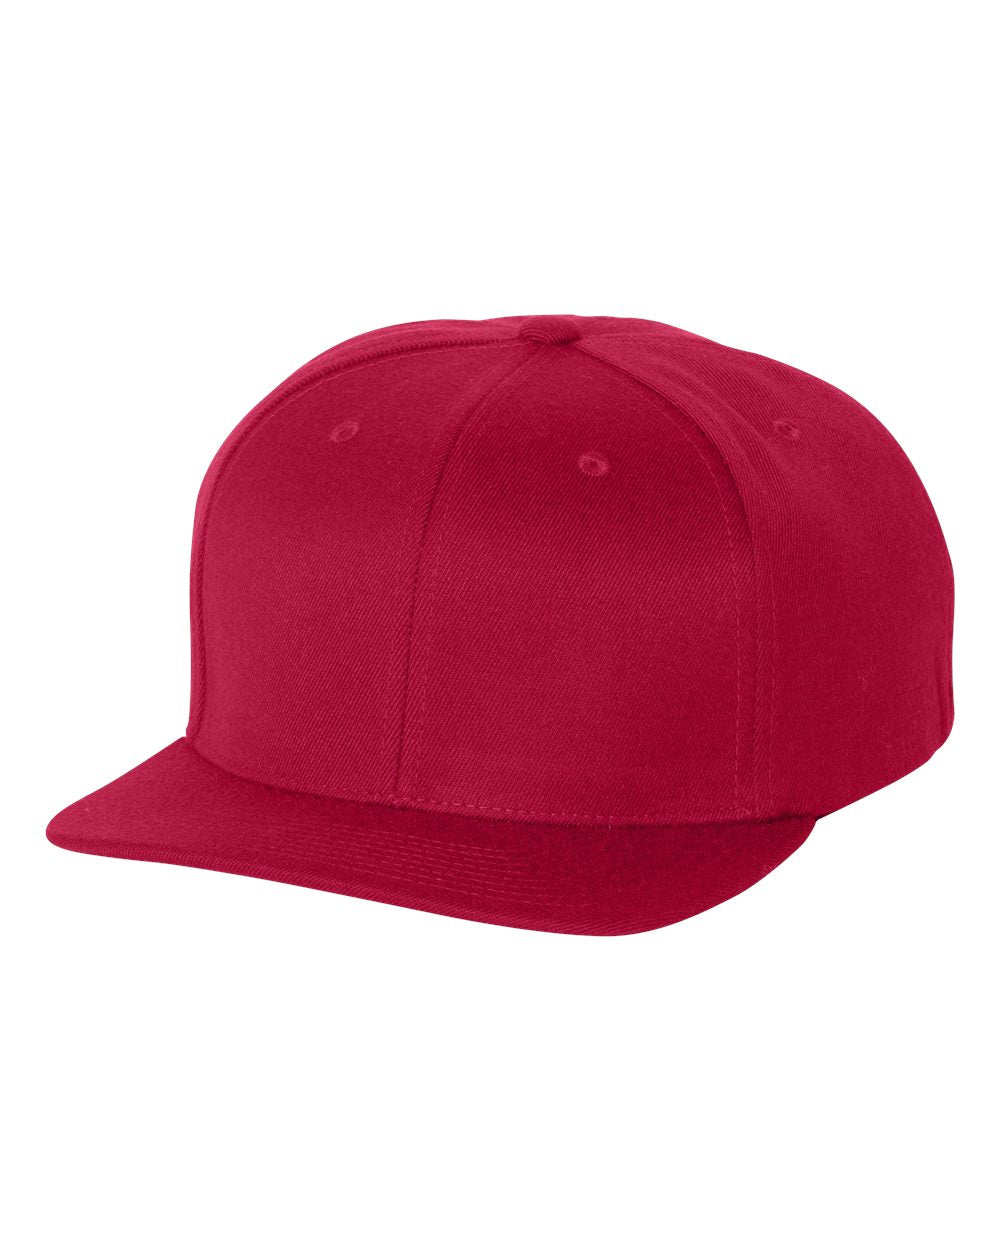 Flexfit 110® Flat Bill Snapback Cap 110F #color_Red